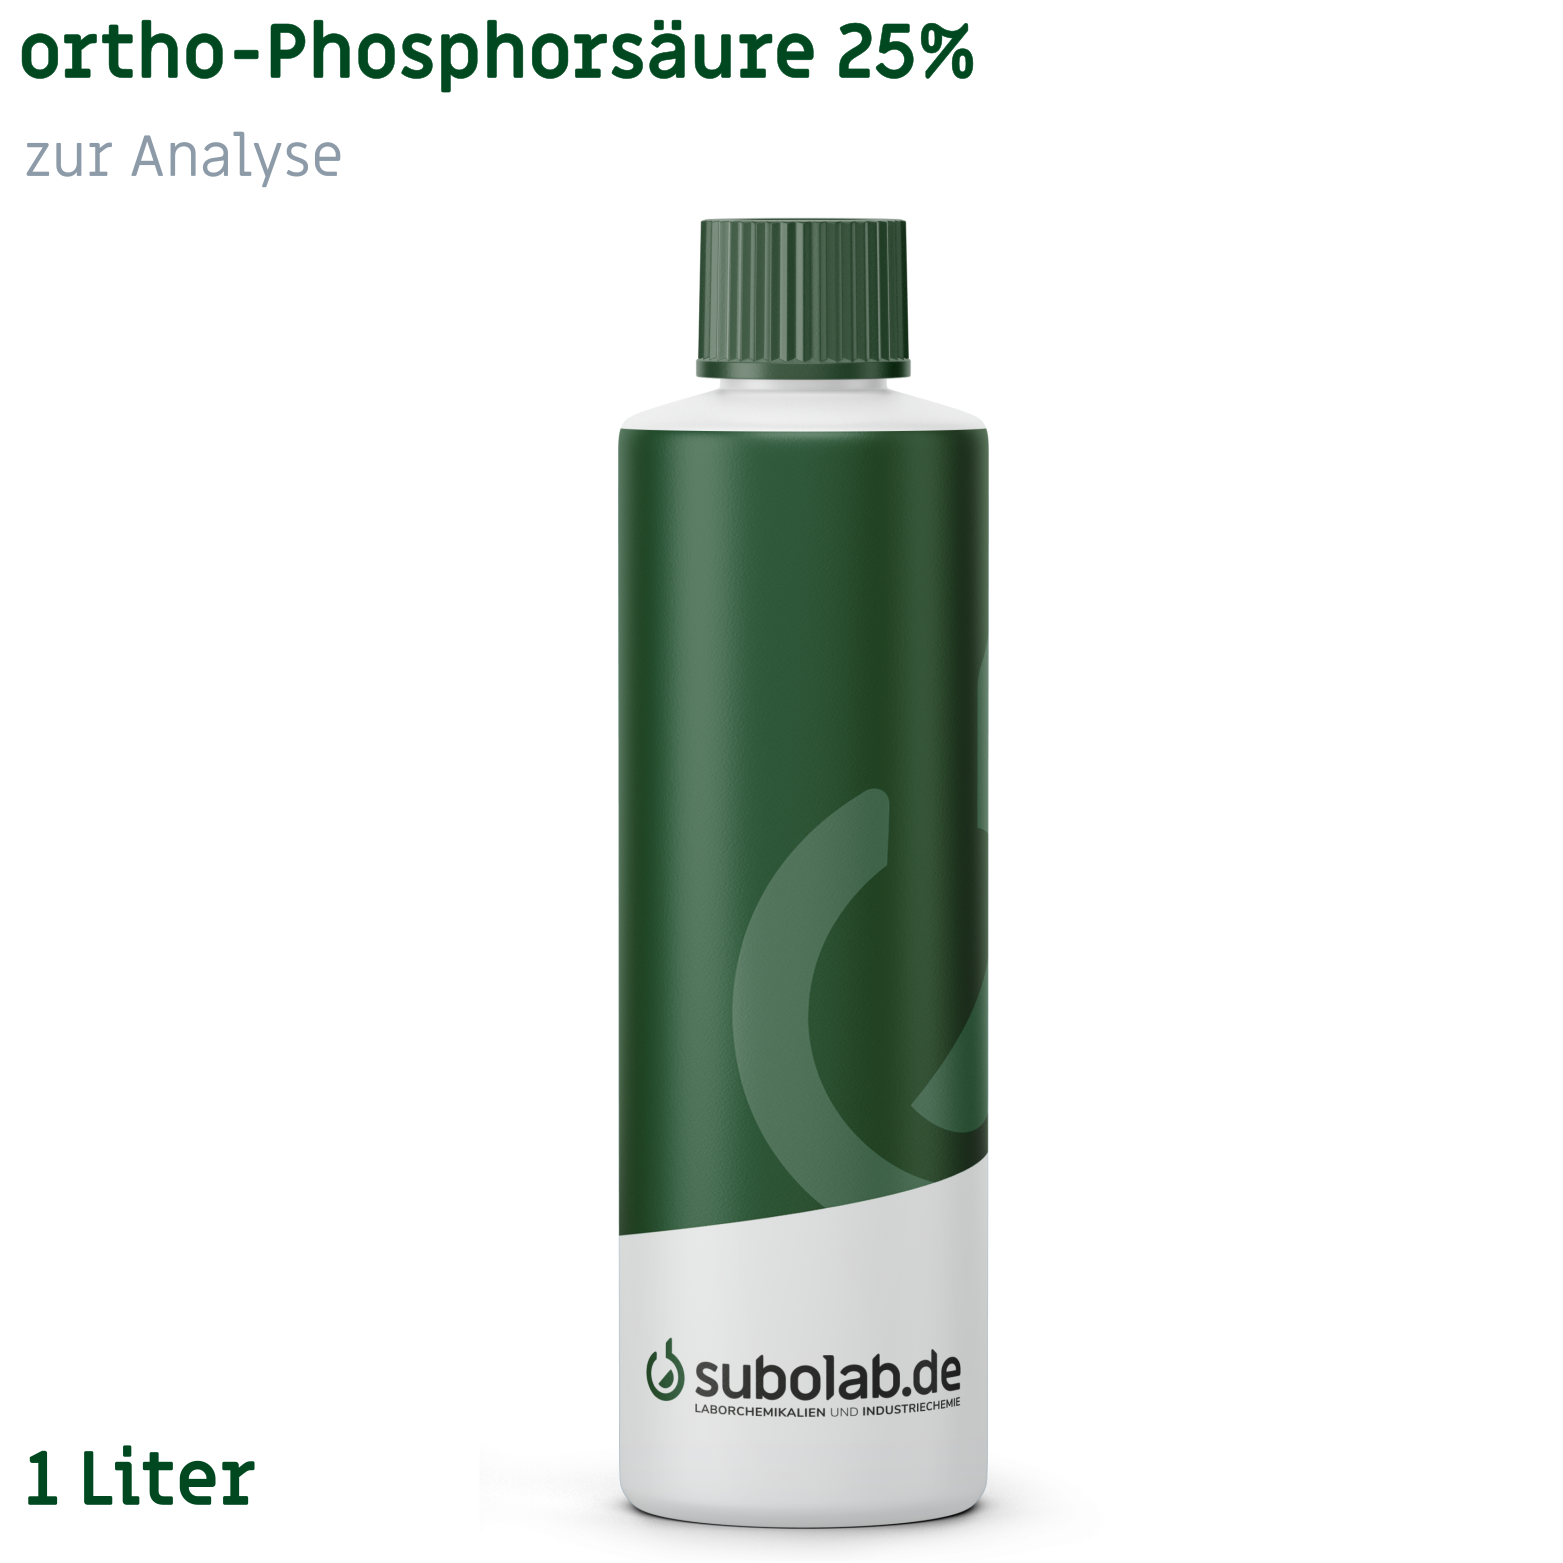 Bild von ortho-Phosphorsäure 25% zur Analyse (1 Liter)